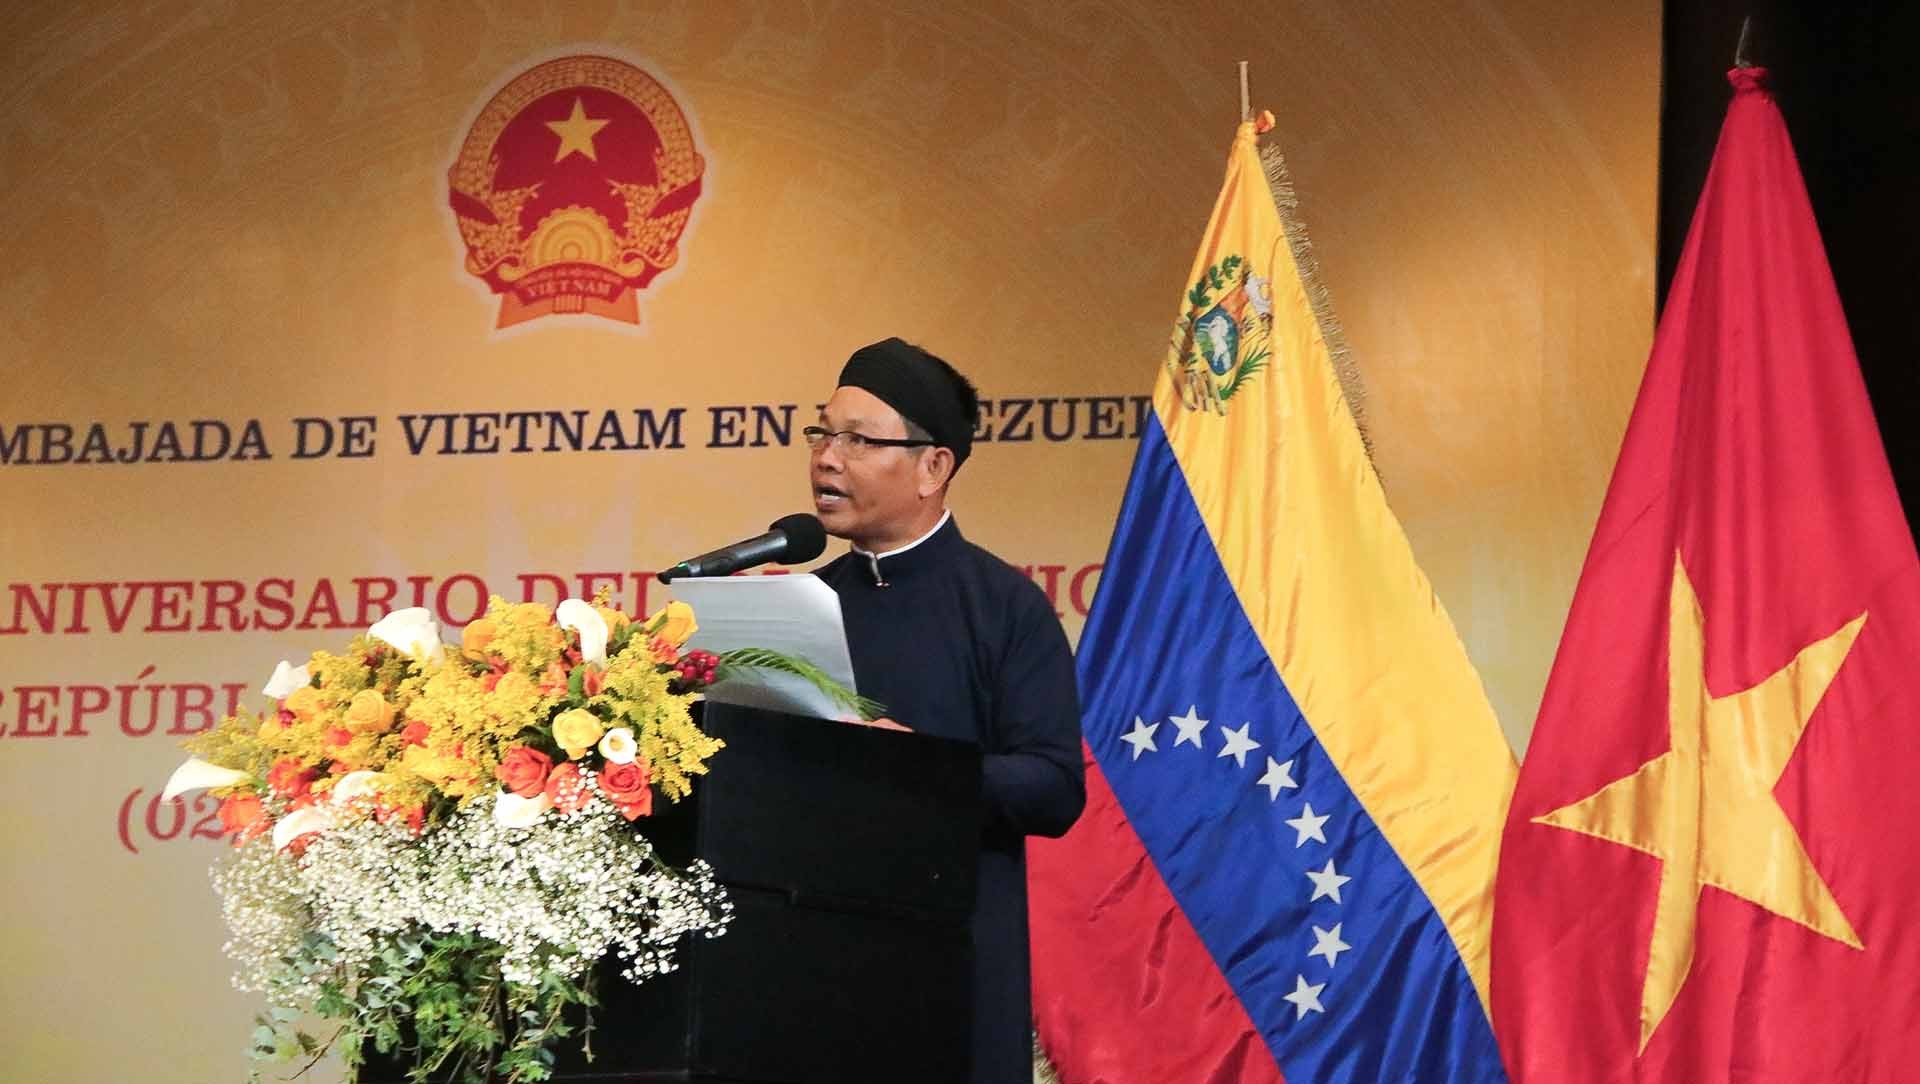 Đại sứ Vũ Trung Mỹ phát biểu tại buổi lễ.